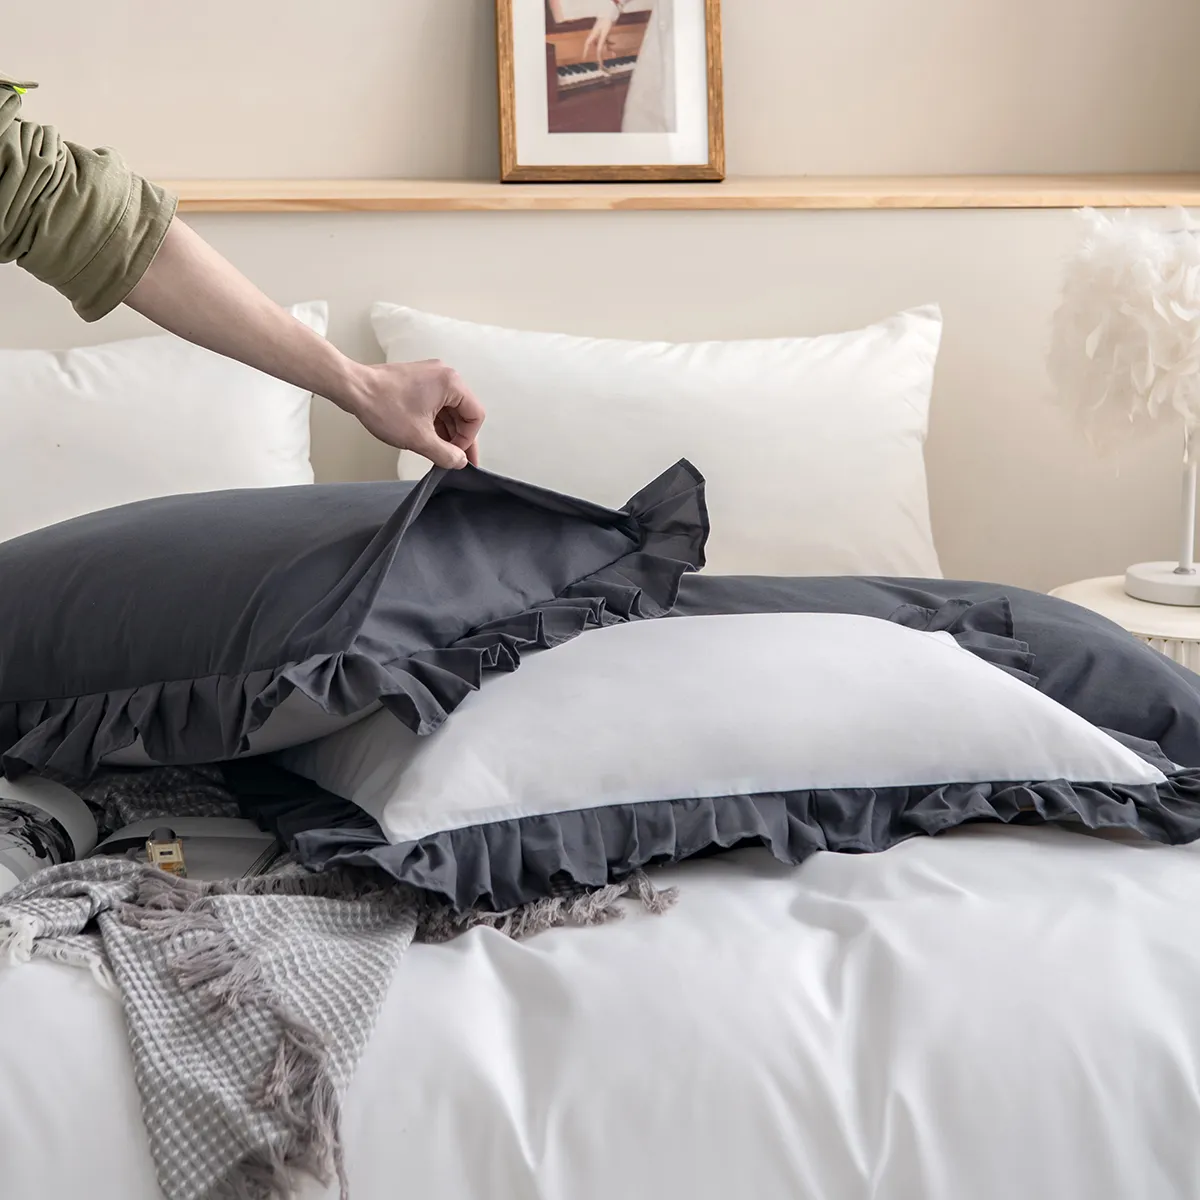 2/3 piezas de juego de cama de color sólido suave y cómodo, que incluye funda nórdica y fundas de almohada gris cálido big image 1